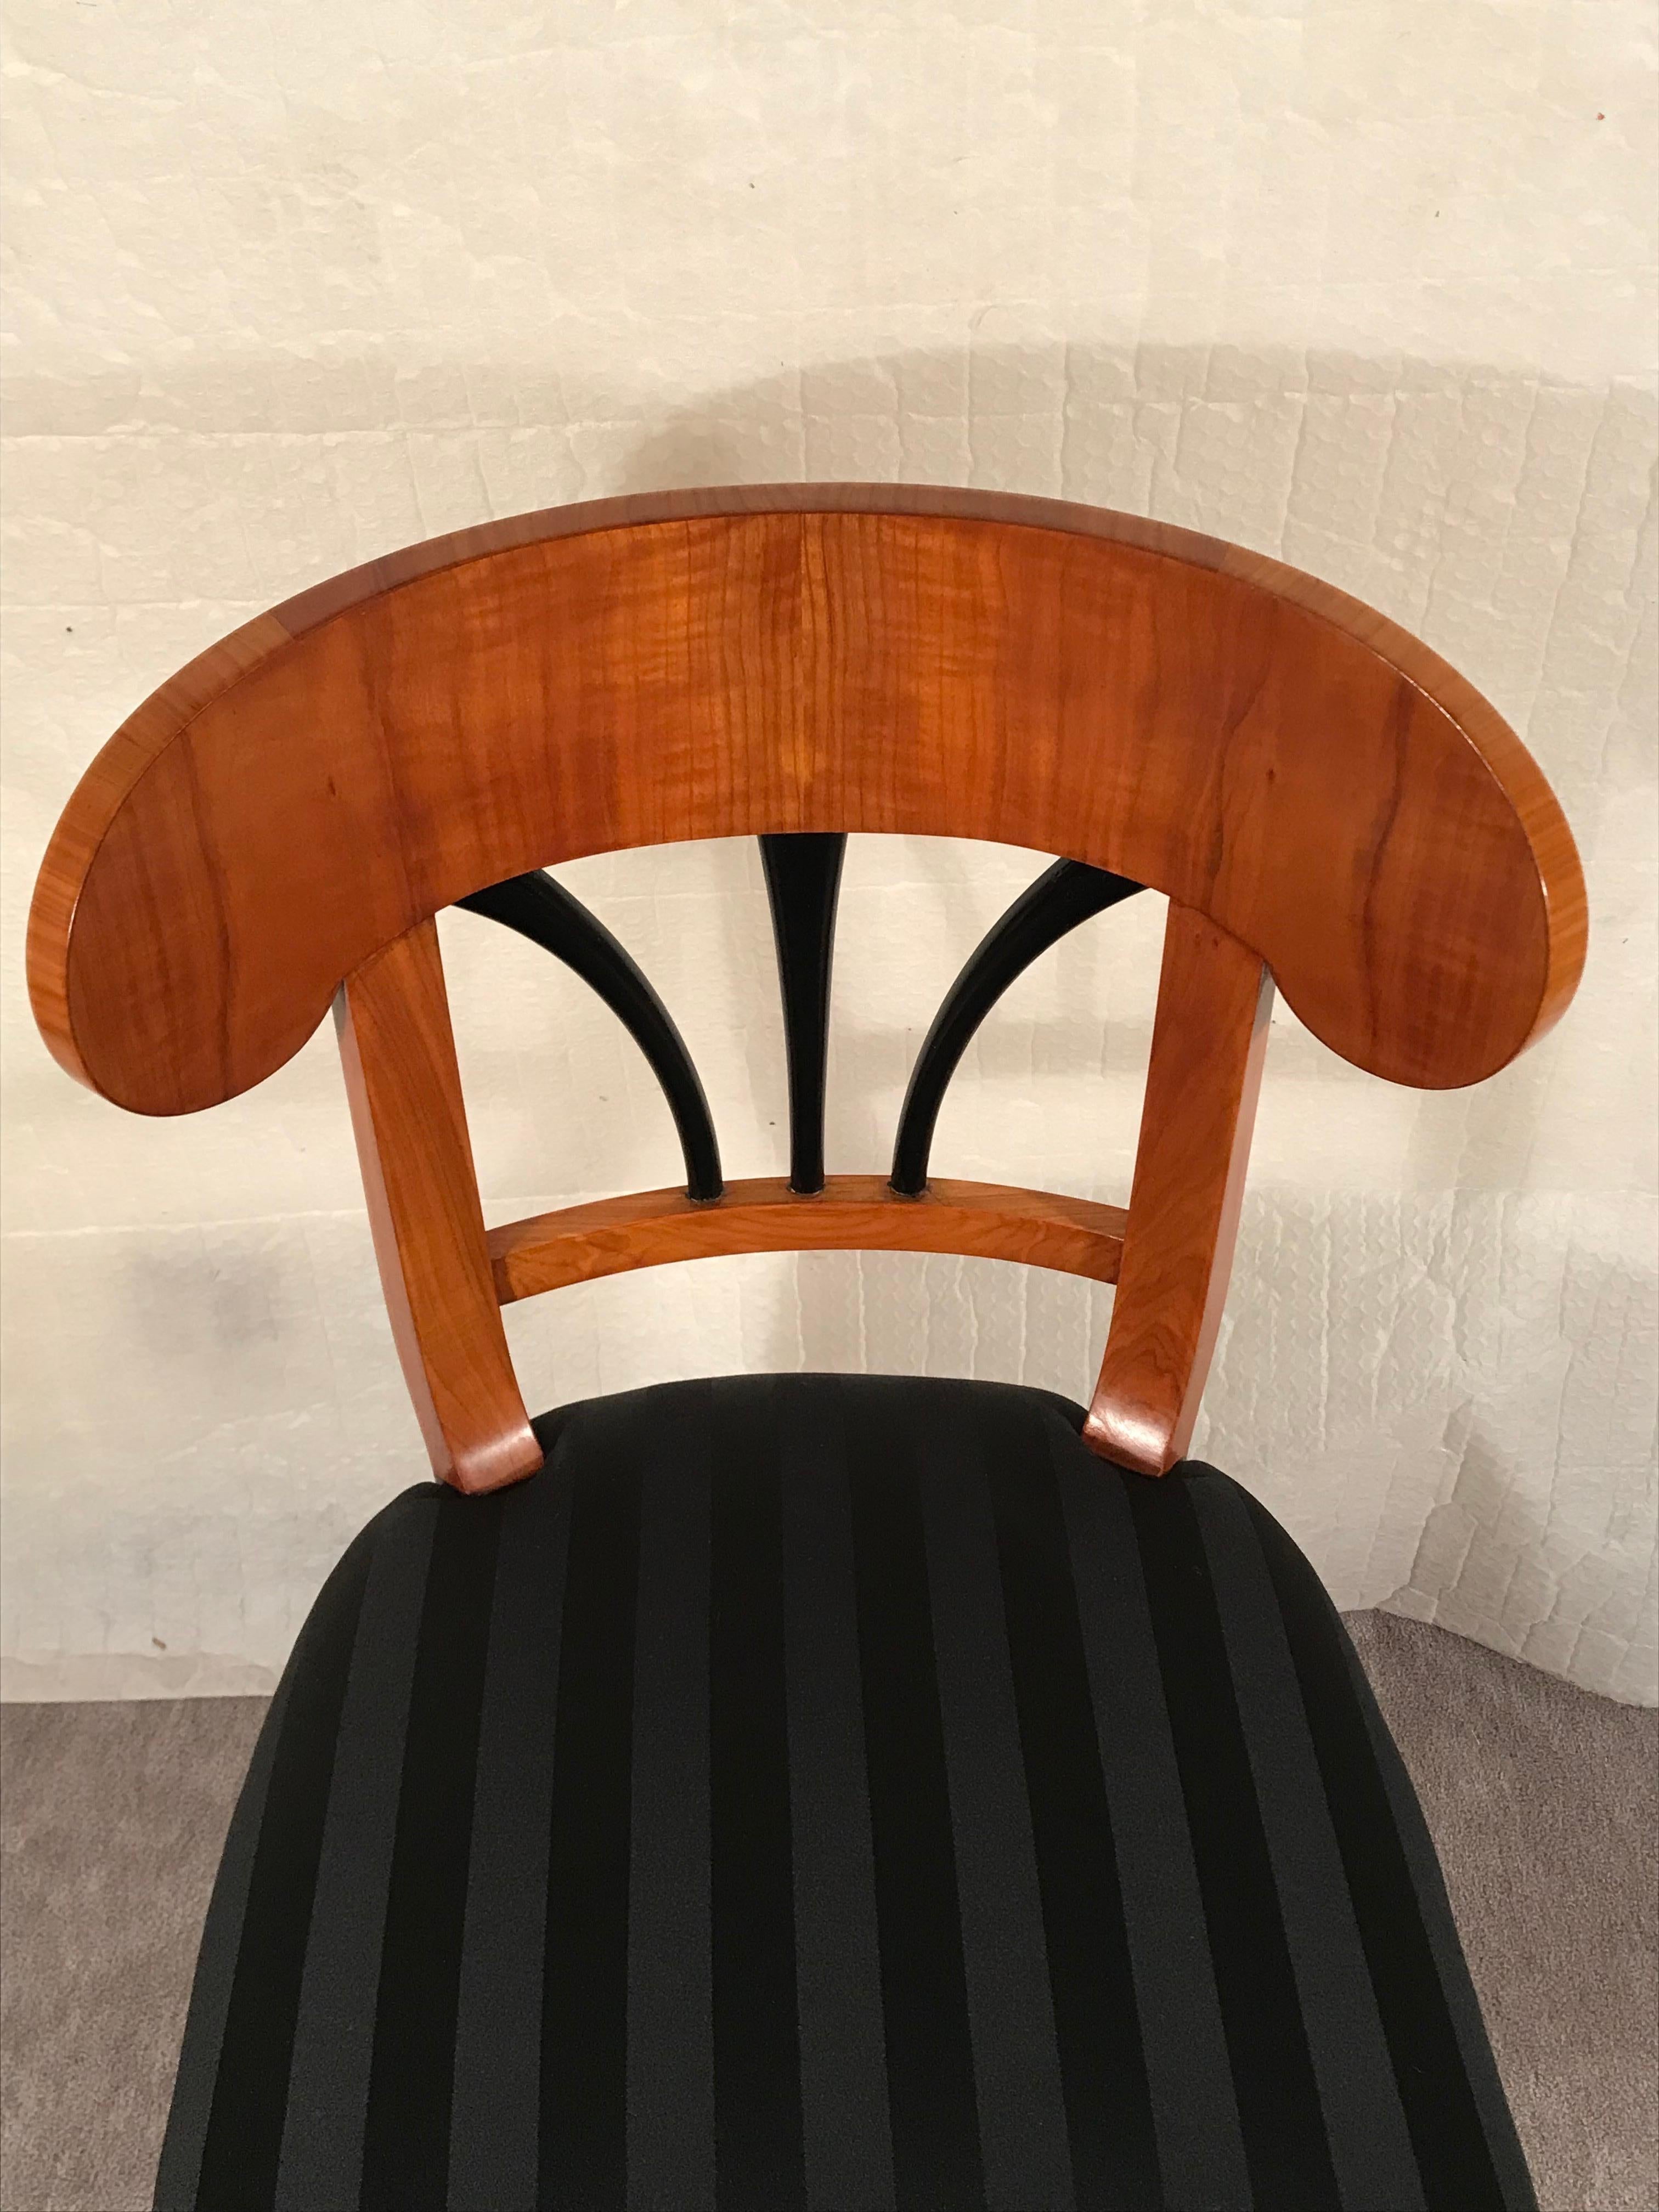 Veneer Biedermeier Chair, South German 1820, Cherry